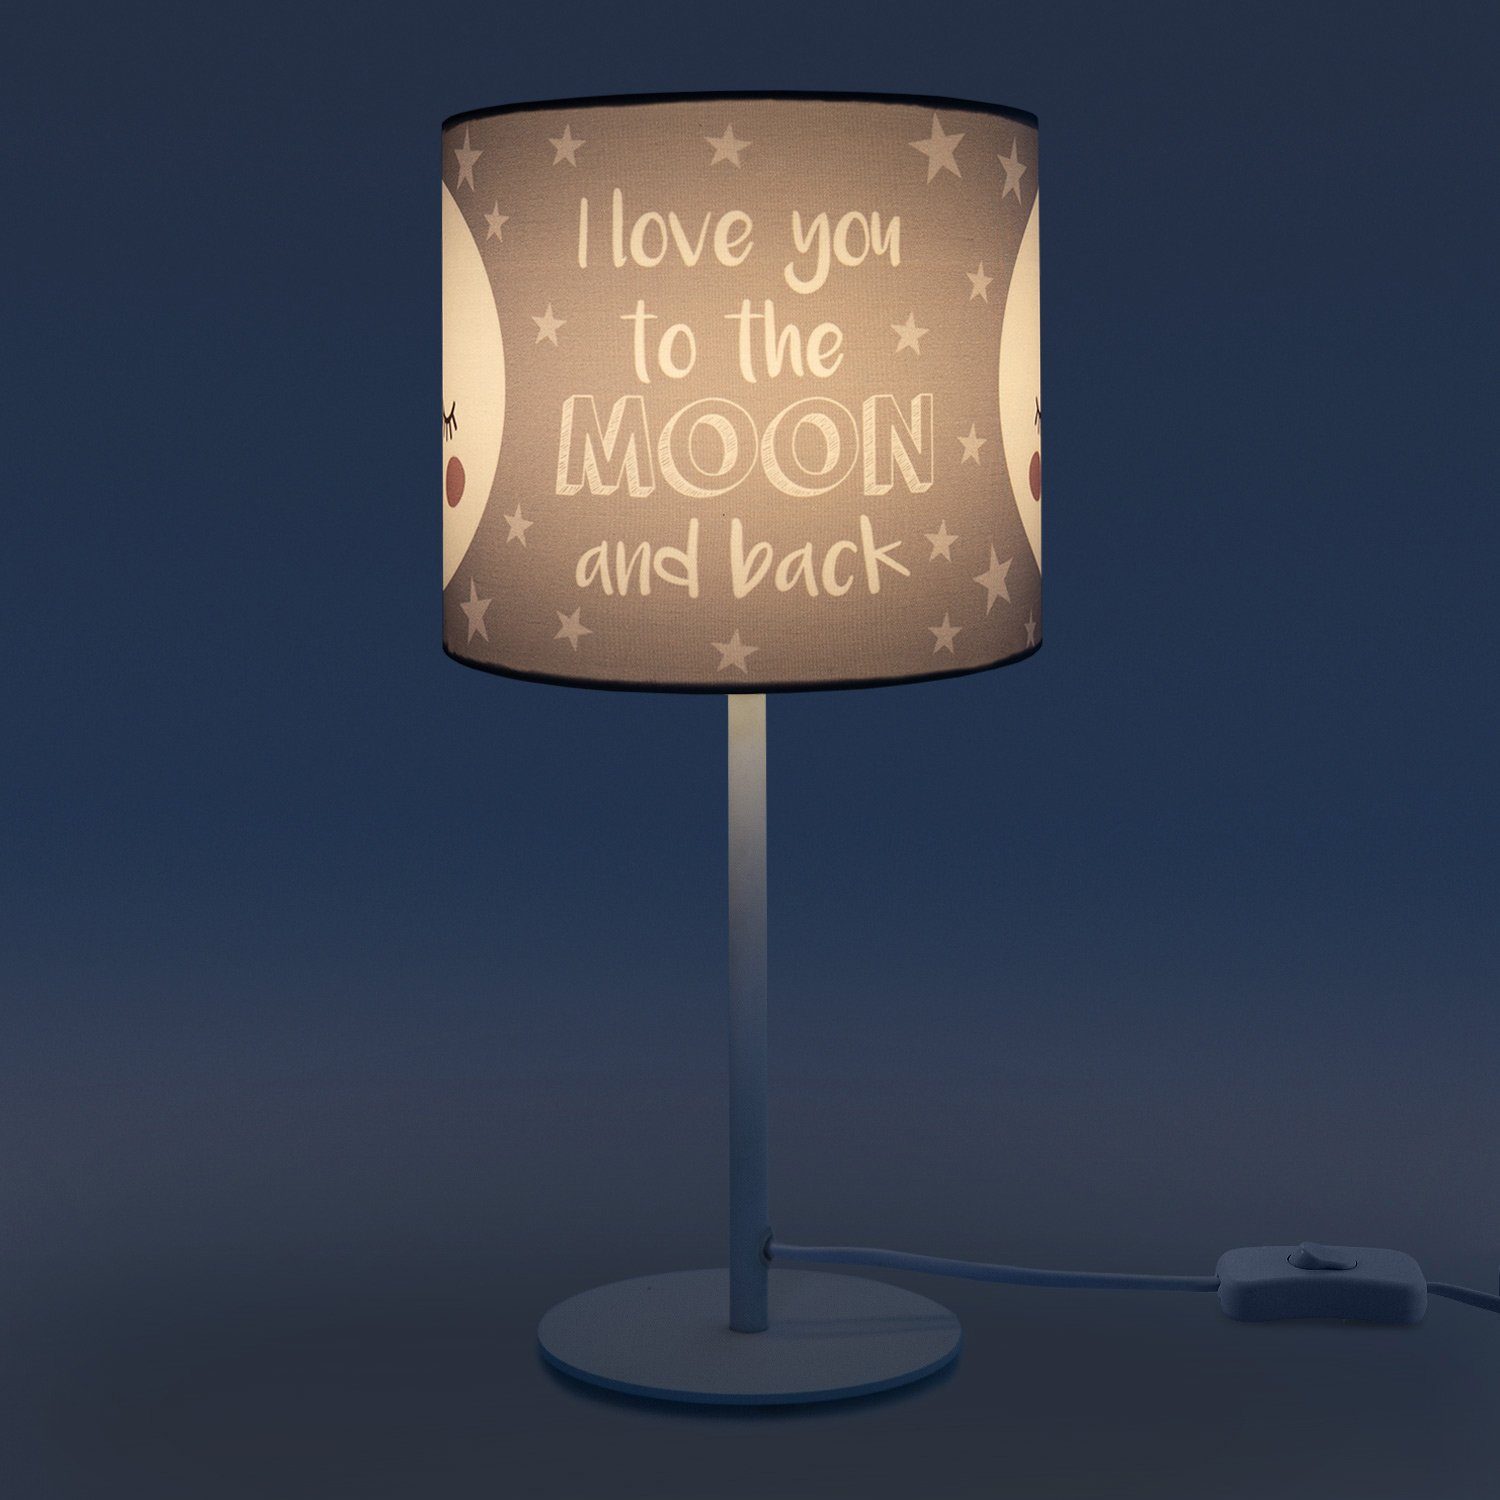 E14 Leuchtmittel, Paco LED Home Aleyna Lampe Mond-Motiv, mit Kinderlampe 103, ohne Tischleuchte Kinderzimmer Tischleuchte